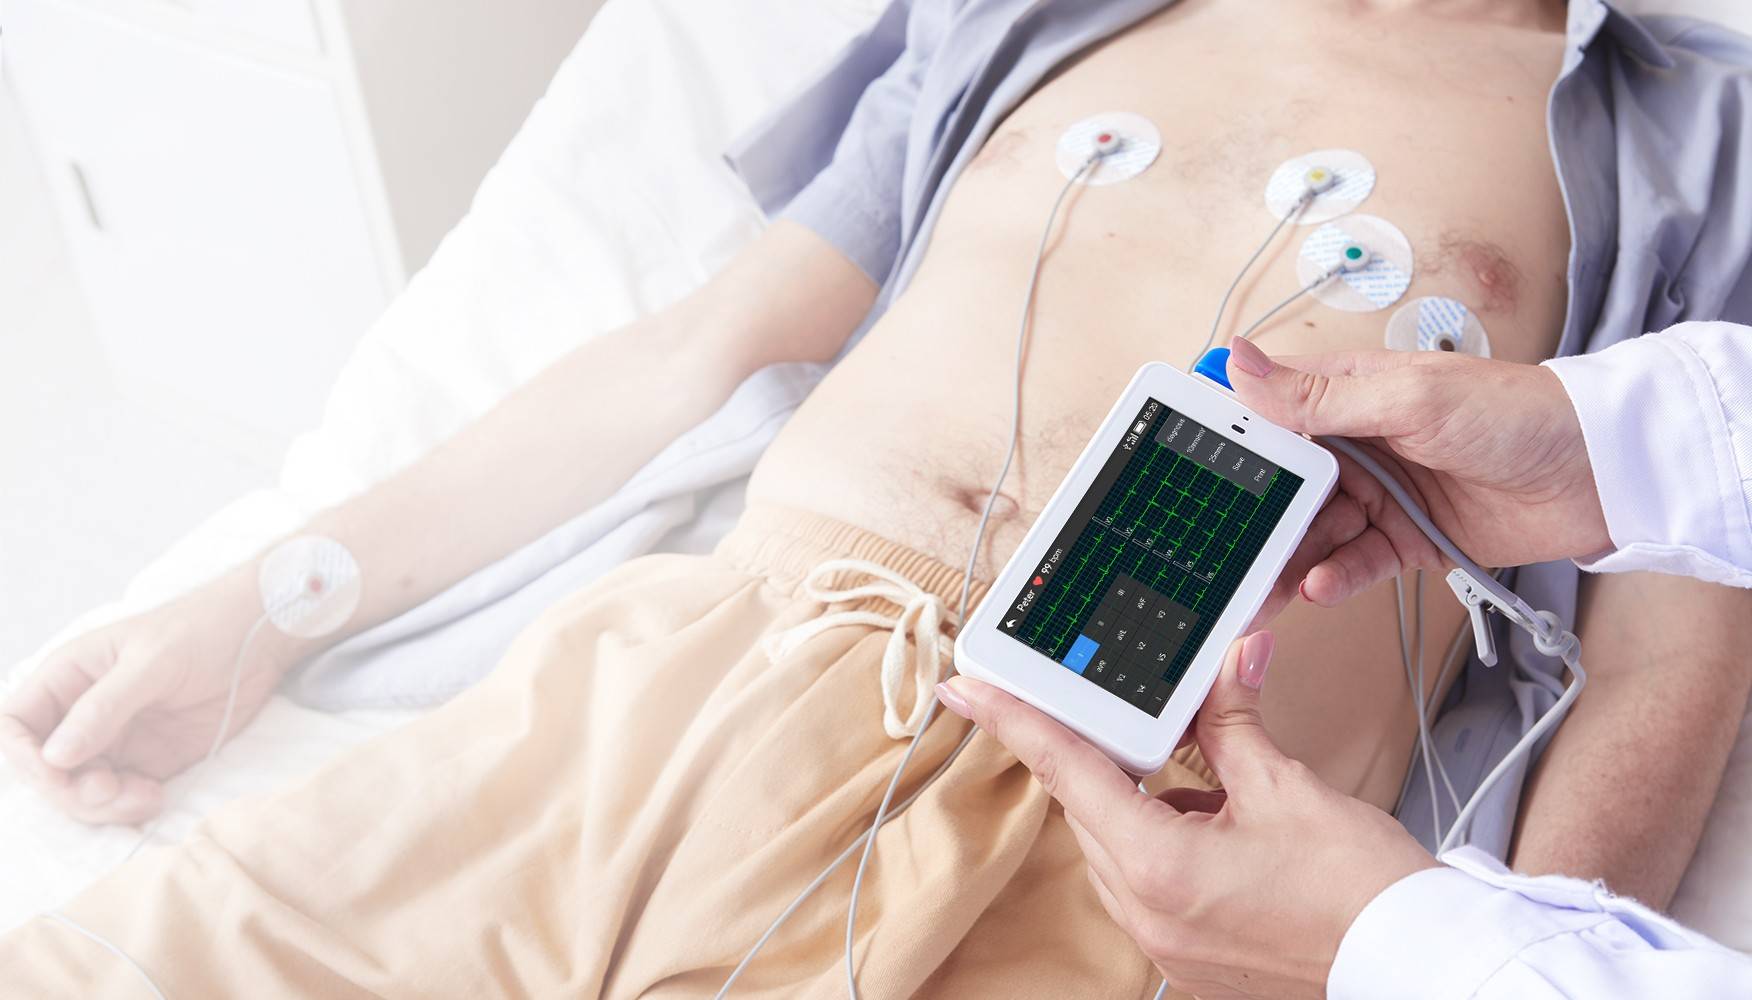 يستخدم الطبيب جهاز تخطيط القلب الجيبي ذي 12 سلكًا لإجراء اختبار للمريض